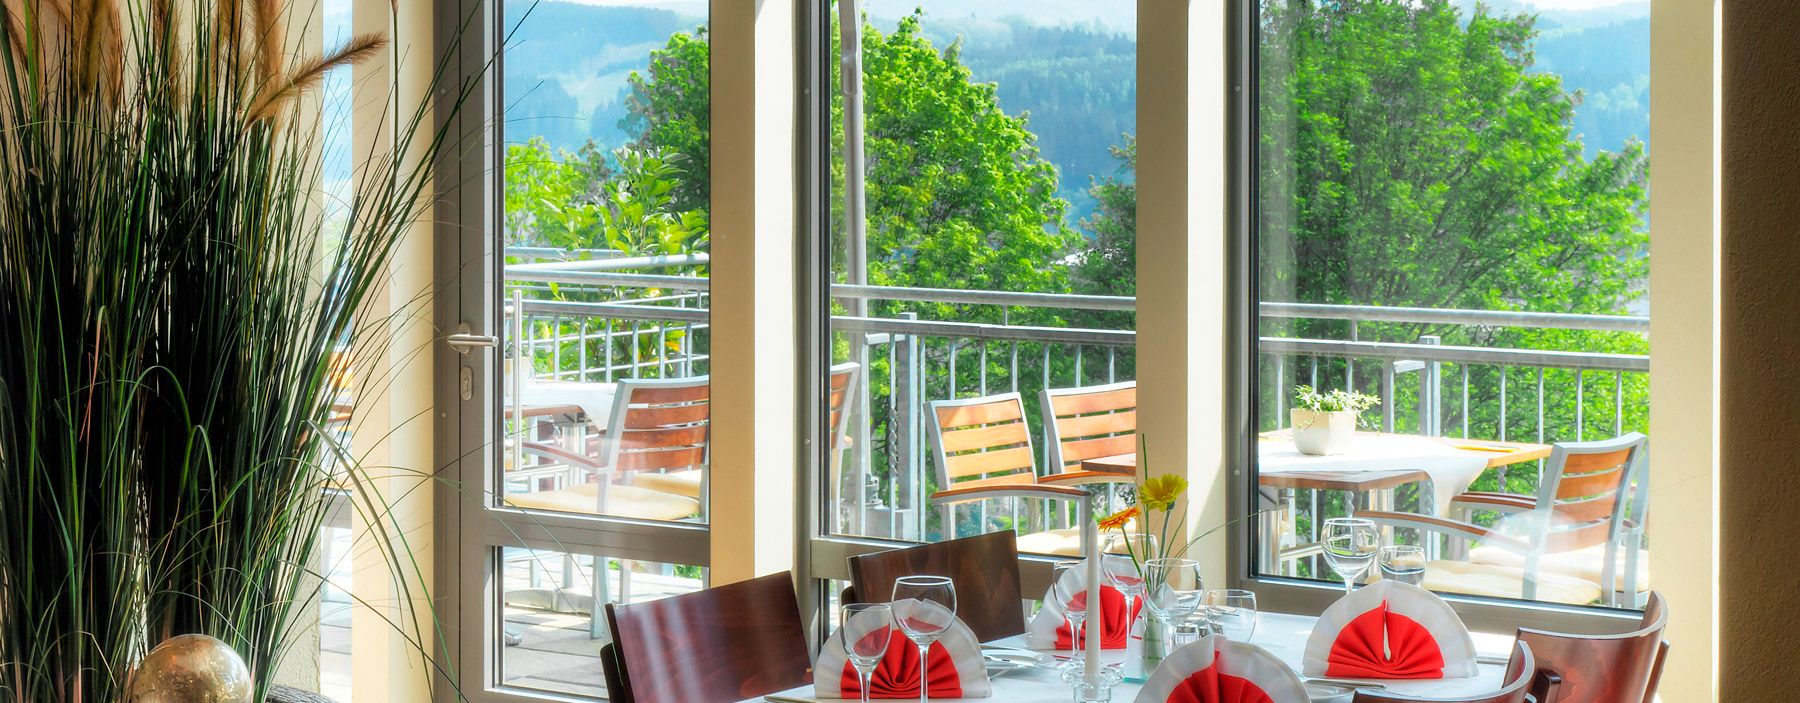 Restaurant mit Terrasse und schönem Ausblick über das Bergische Land